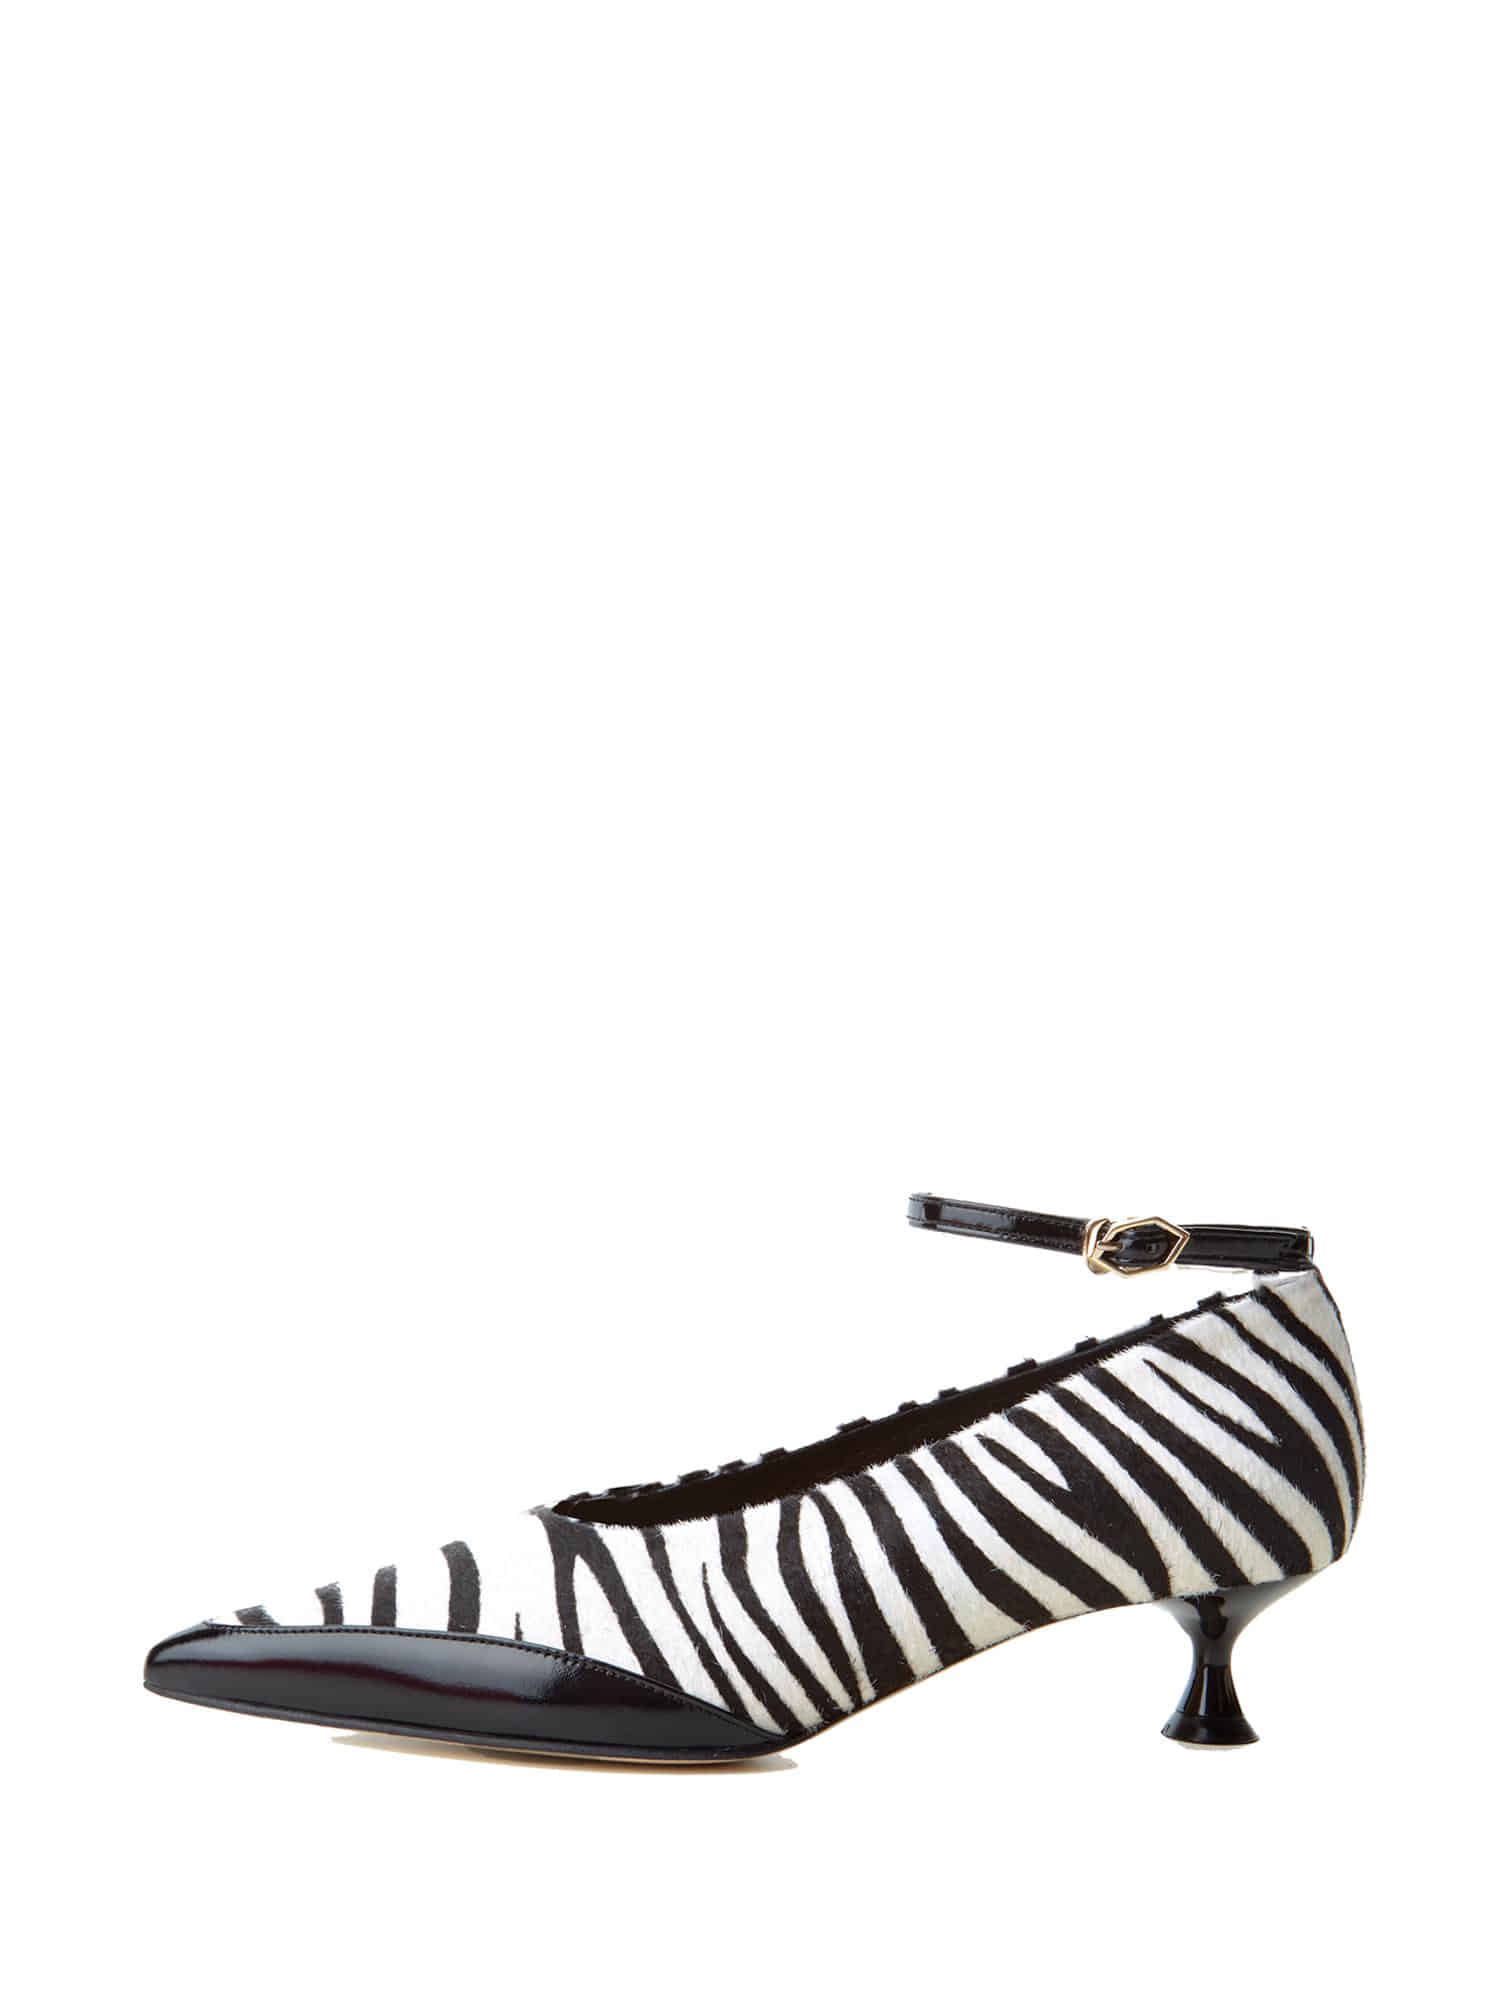 Tours Shoes - Zebra